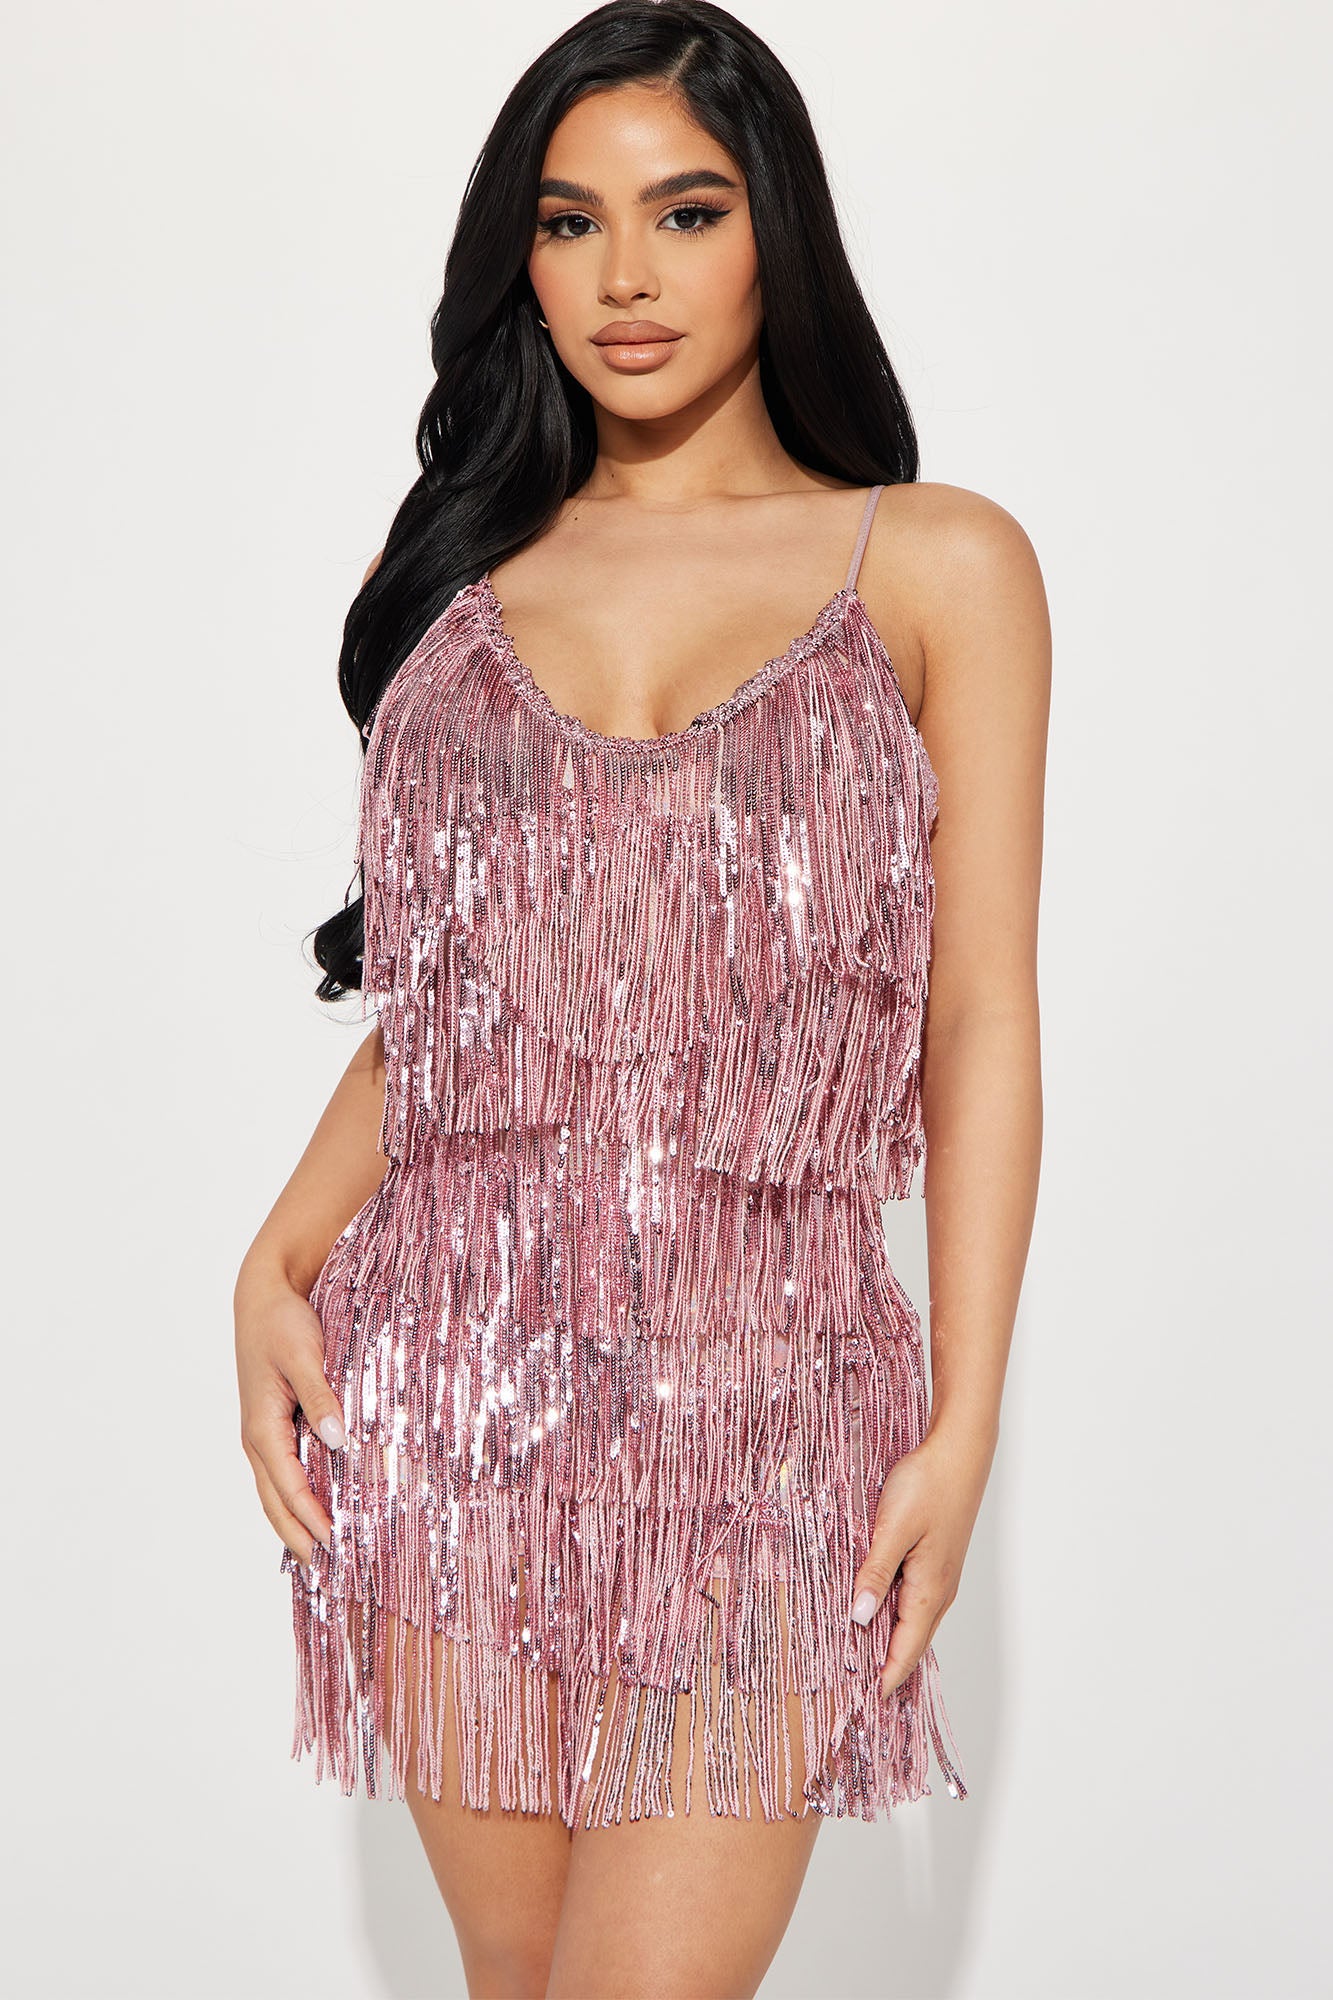 Fashion Nova, Dresses, One Shoulder Sequin Dress Hot Pink